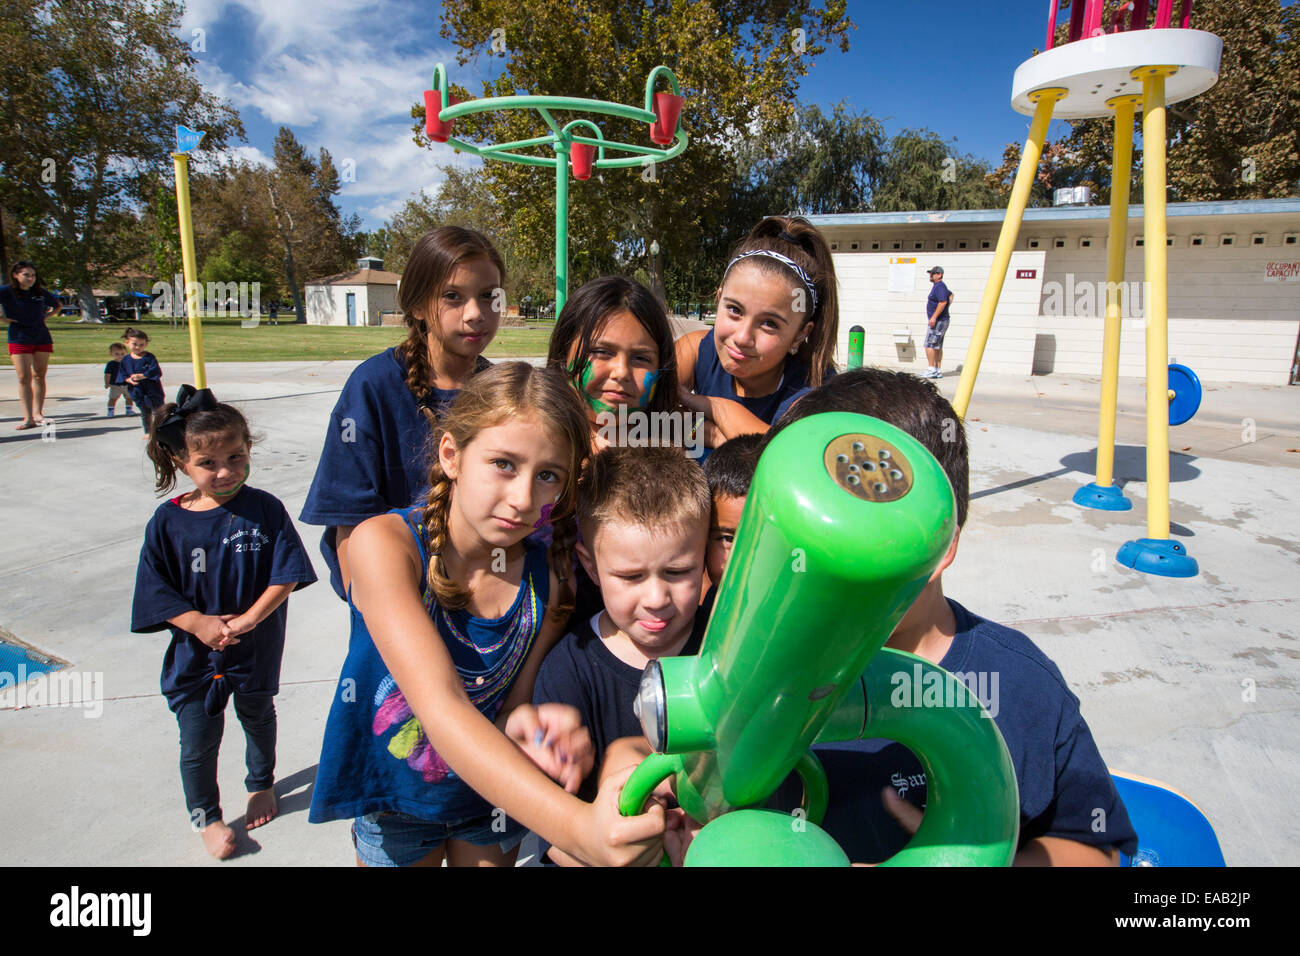 Les enfants dans un parc de pulvérisation à Bakersfield, Californie, USA. Après les quatre ans de sécheresse, Bakersfield est maintenant le plus sec des villes des USA. Toutes les villes parcs de pulvérisation ont été fermées comme il n'y a plus assez d'eau pour les faire fonctionner. Banque D'Images